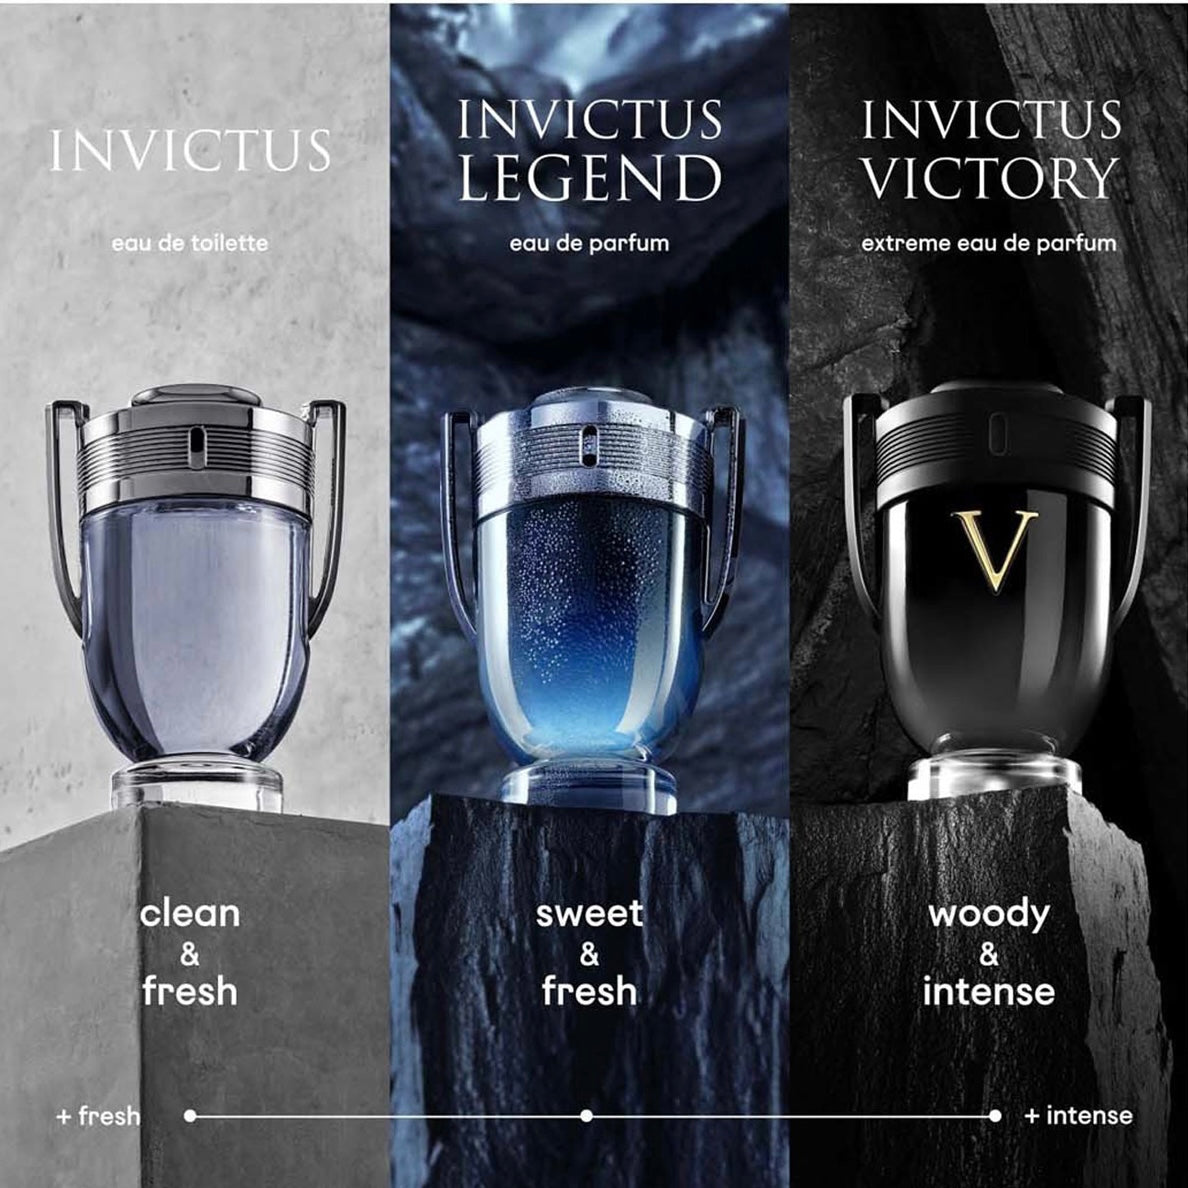 Paco Rabanne Invictus Victory Eau De Parfum  (100 ml) Paco Rabanne